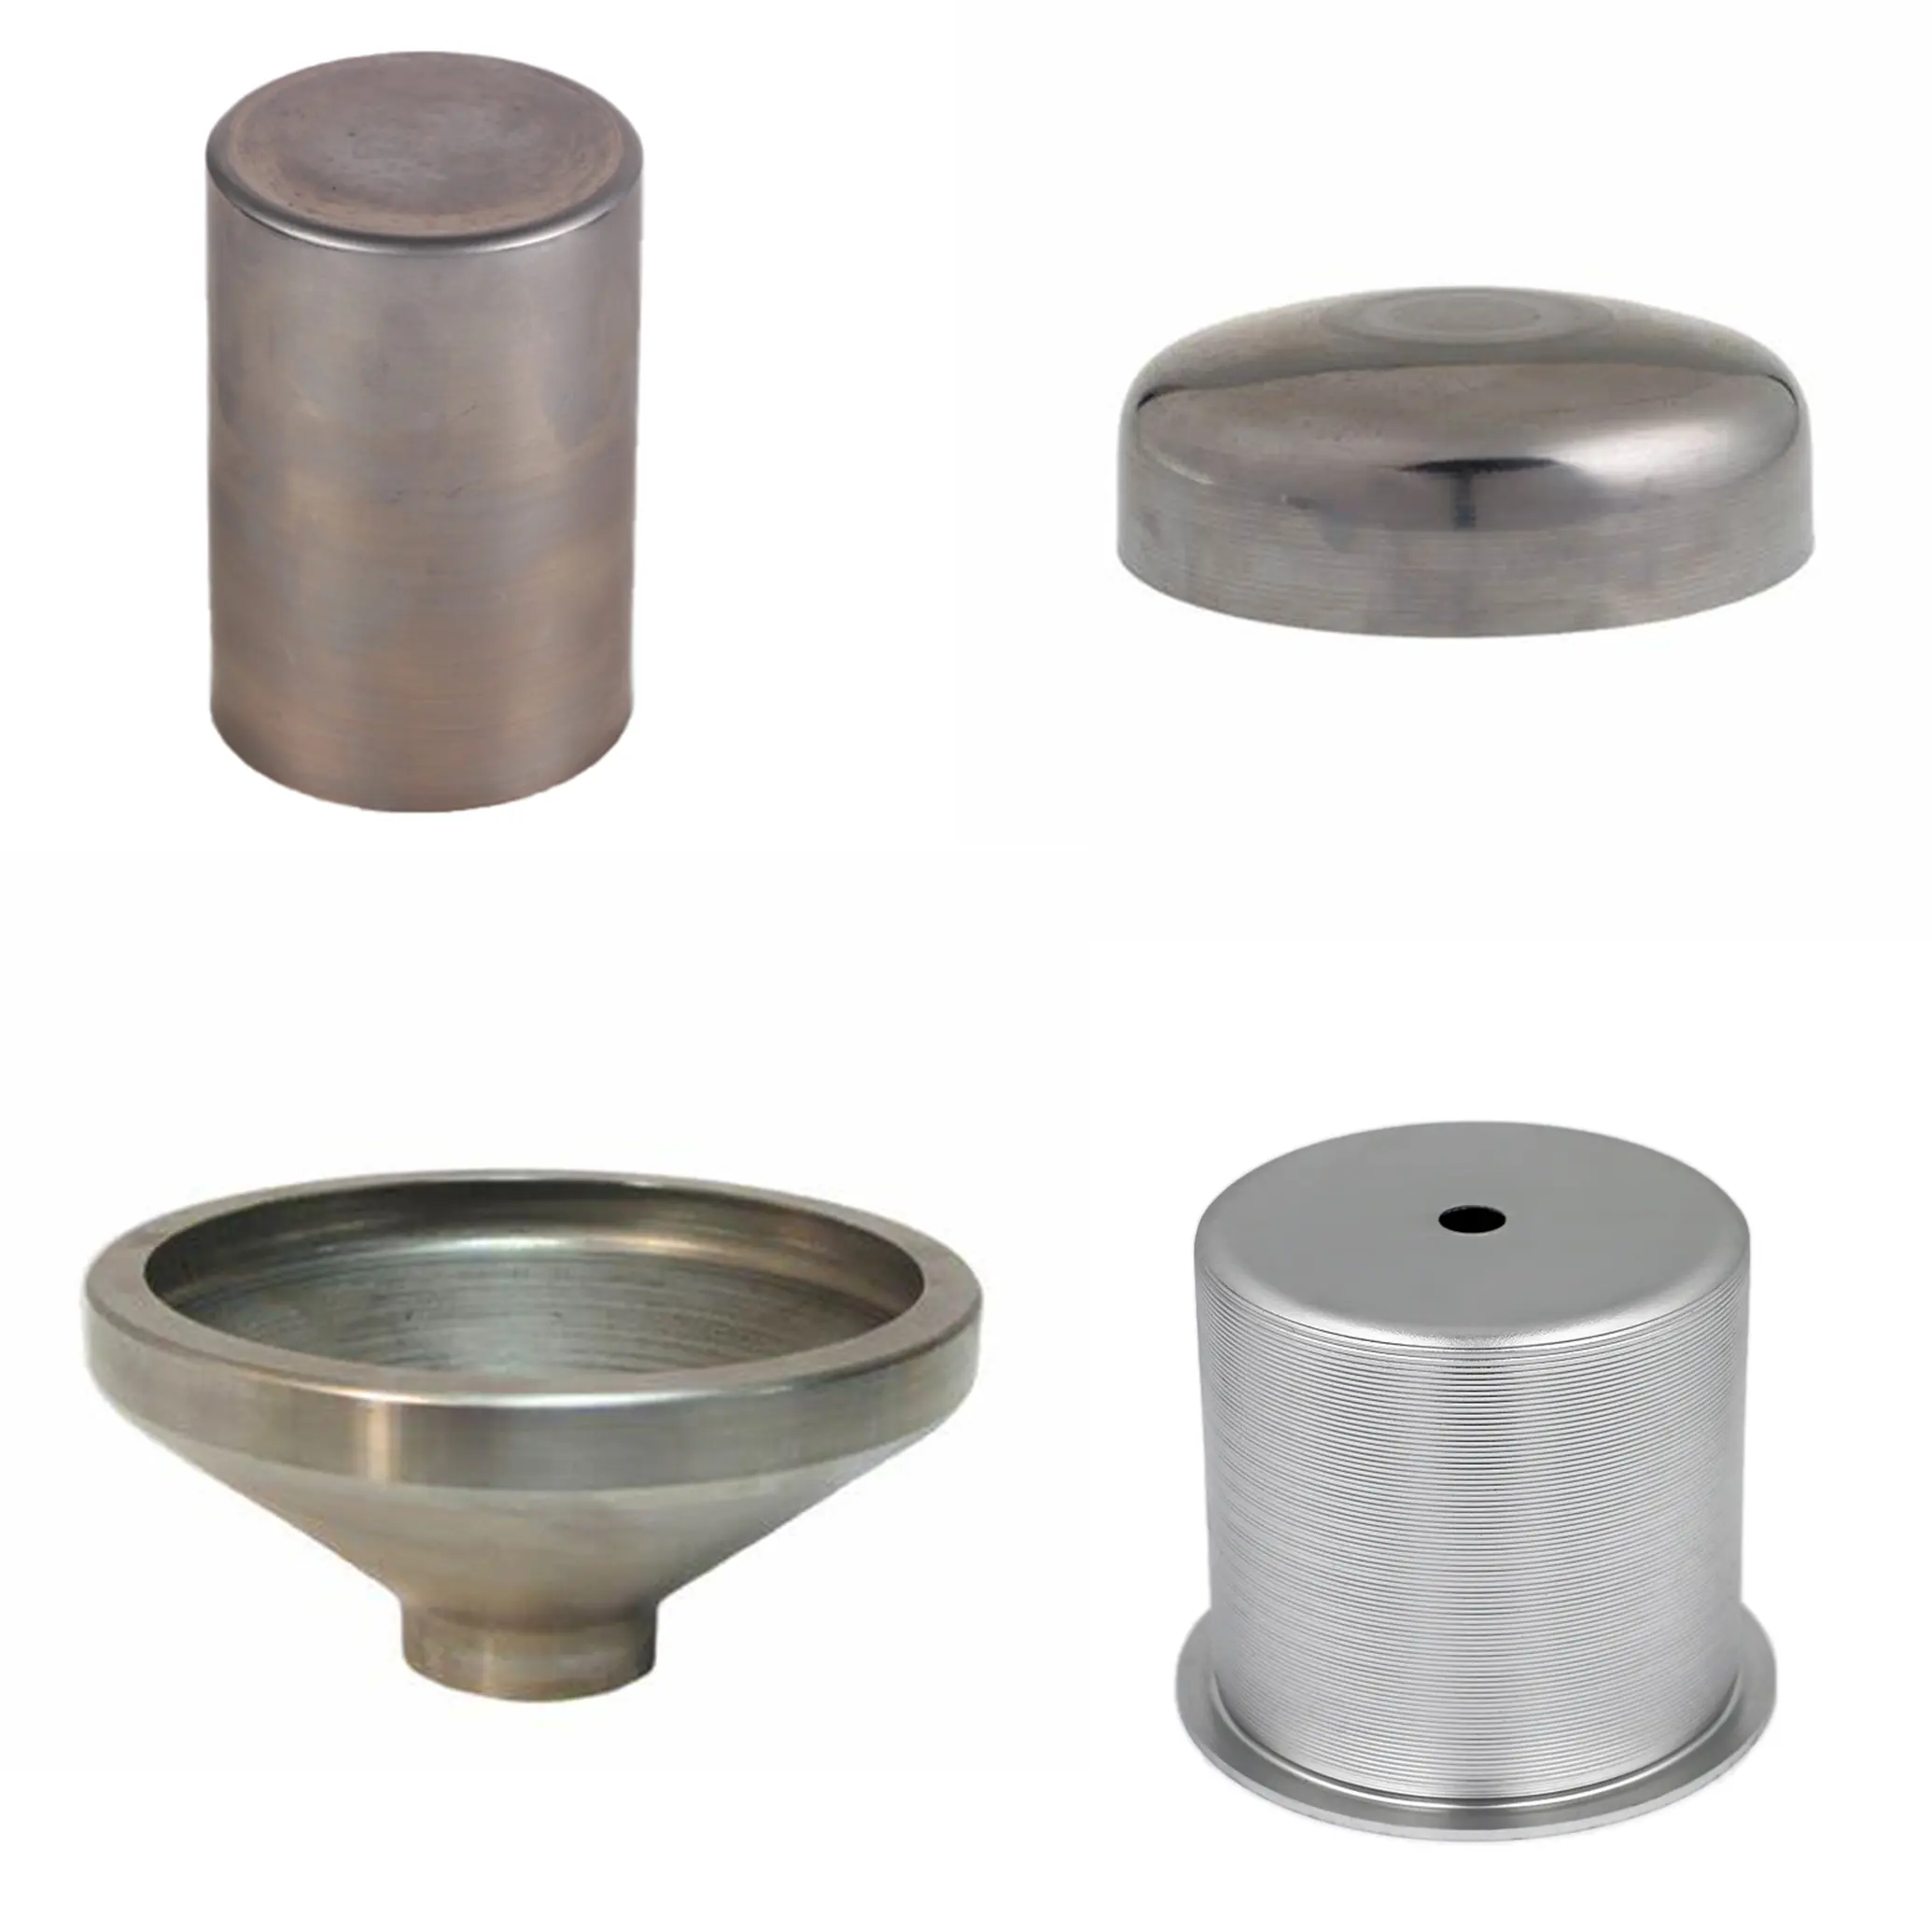 جودة عالية تصنيع المعدات الأصلية الفولاذ المقاوم للصدأ مخروط الغزل ورقة معدنية مخصصة الموردين أدوات تصنيع